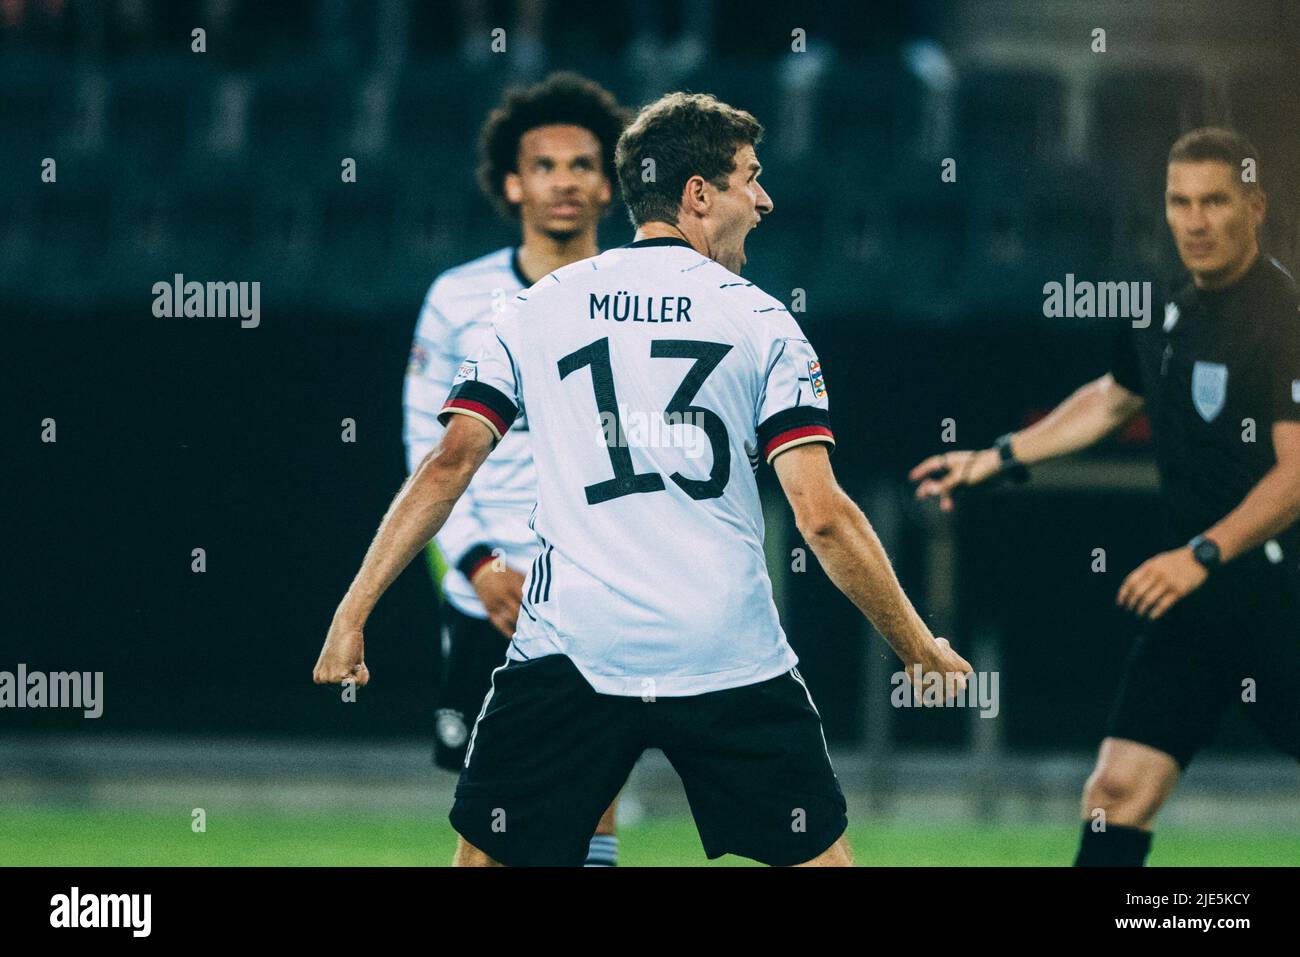 Mönchengladbach, Borussia-Park, 14.06.22: Thomas Mueller (Germany) schiesst ein Tor und jubelt beim Länderspiel zwischen Deutschland vs. Italien.  Fot Stock Photo